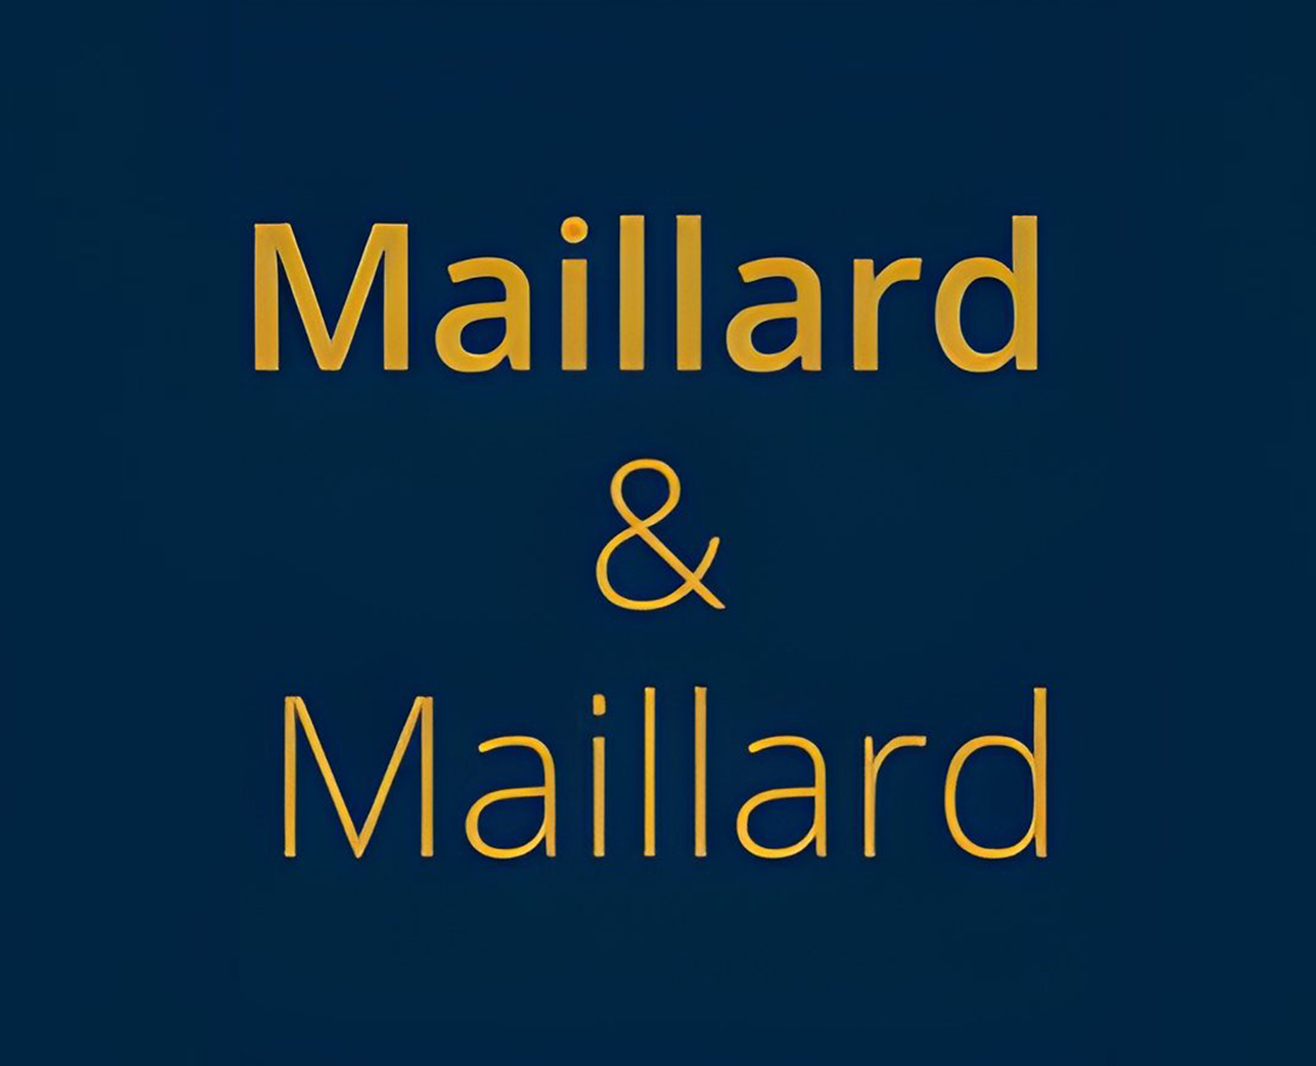 MAILLARD & MAILLARD